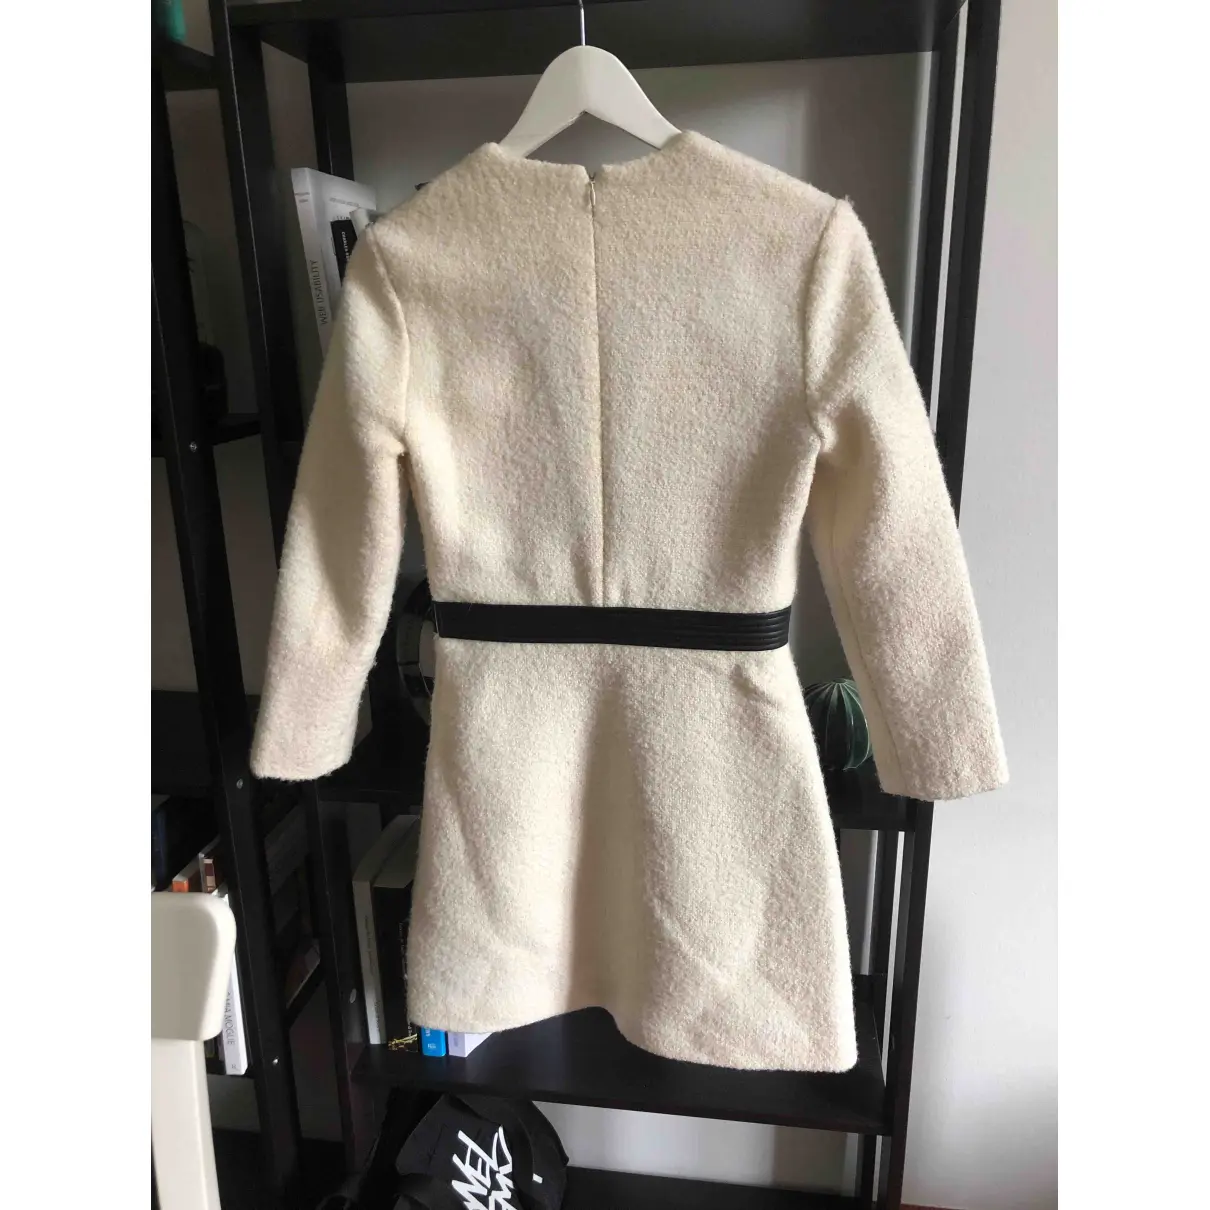 Buy Maje Fall Winter 2020 wool dress online